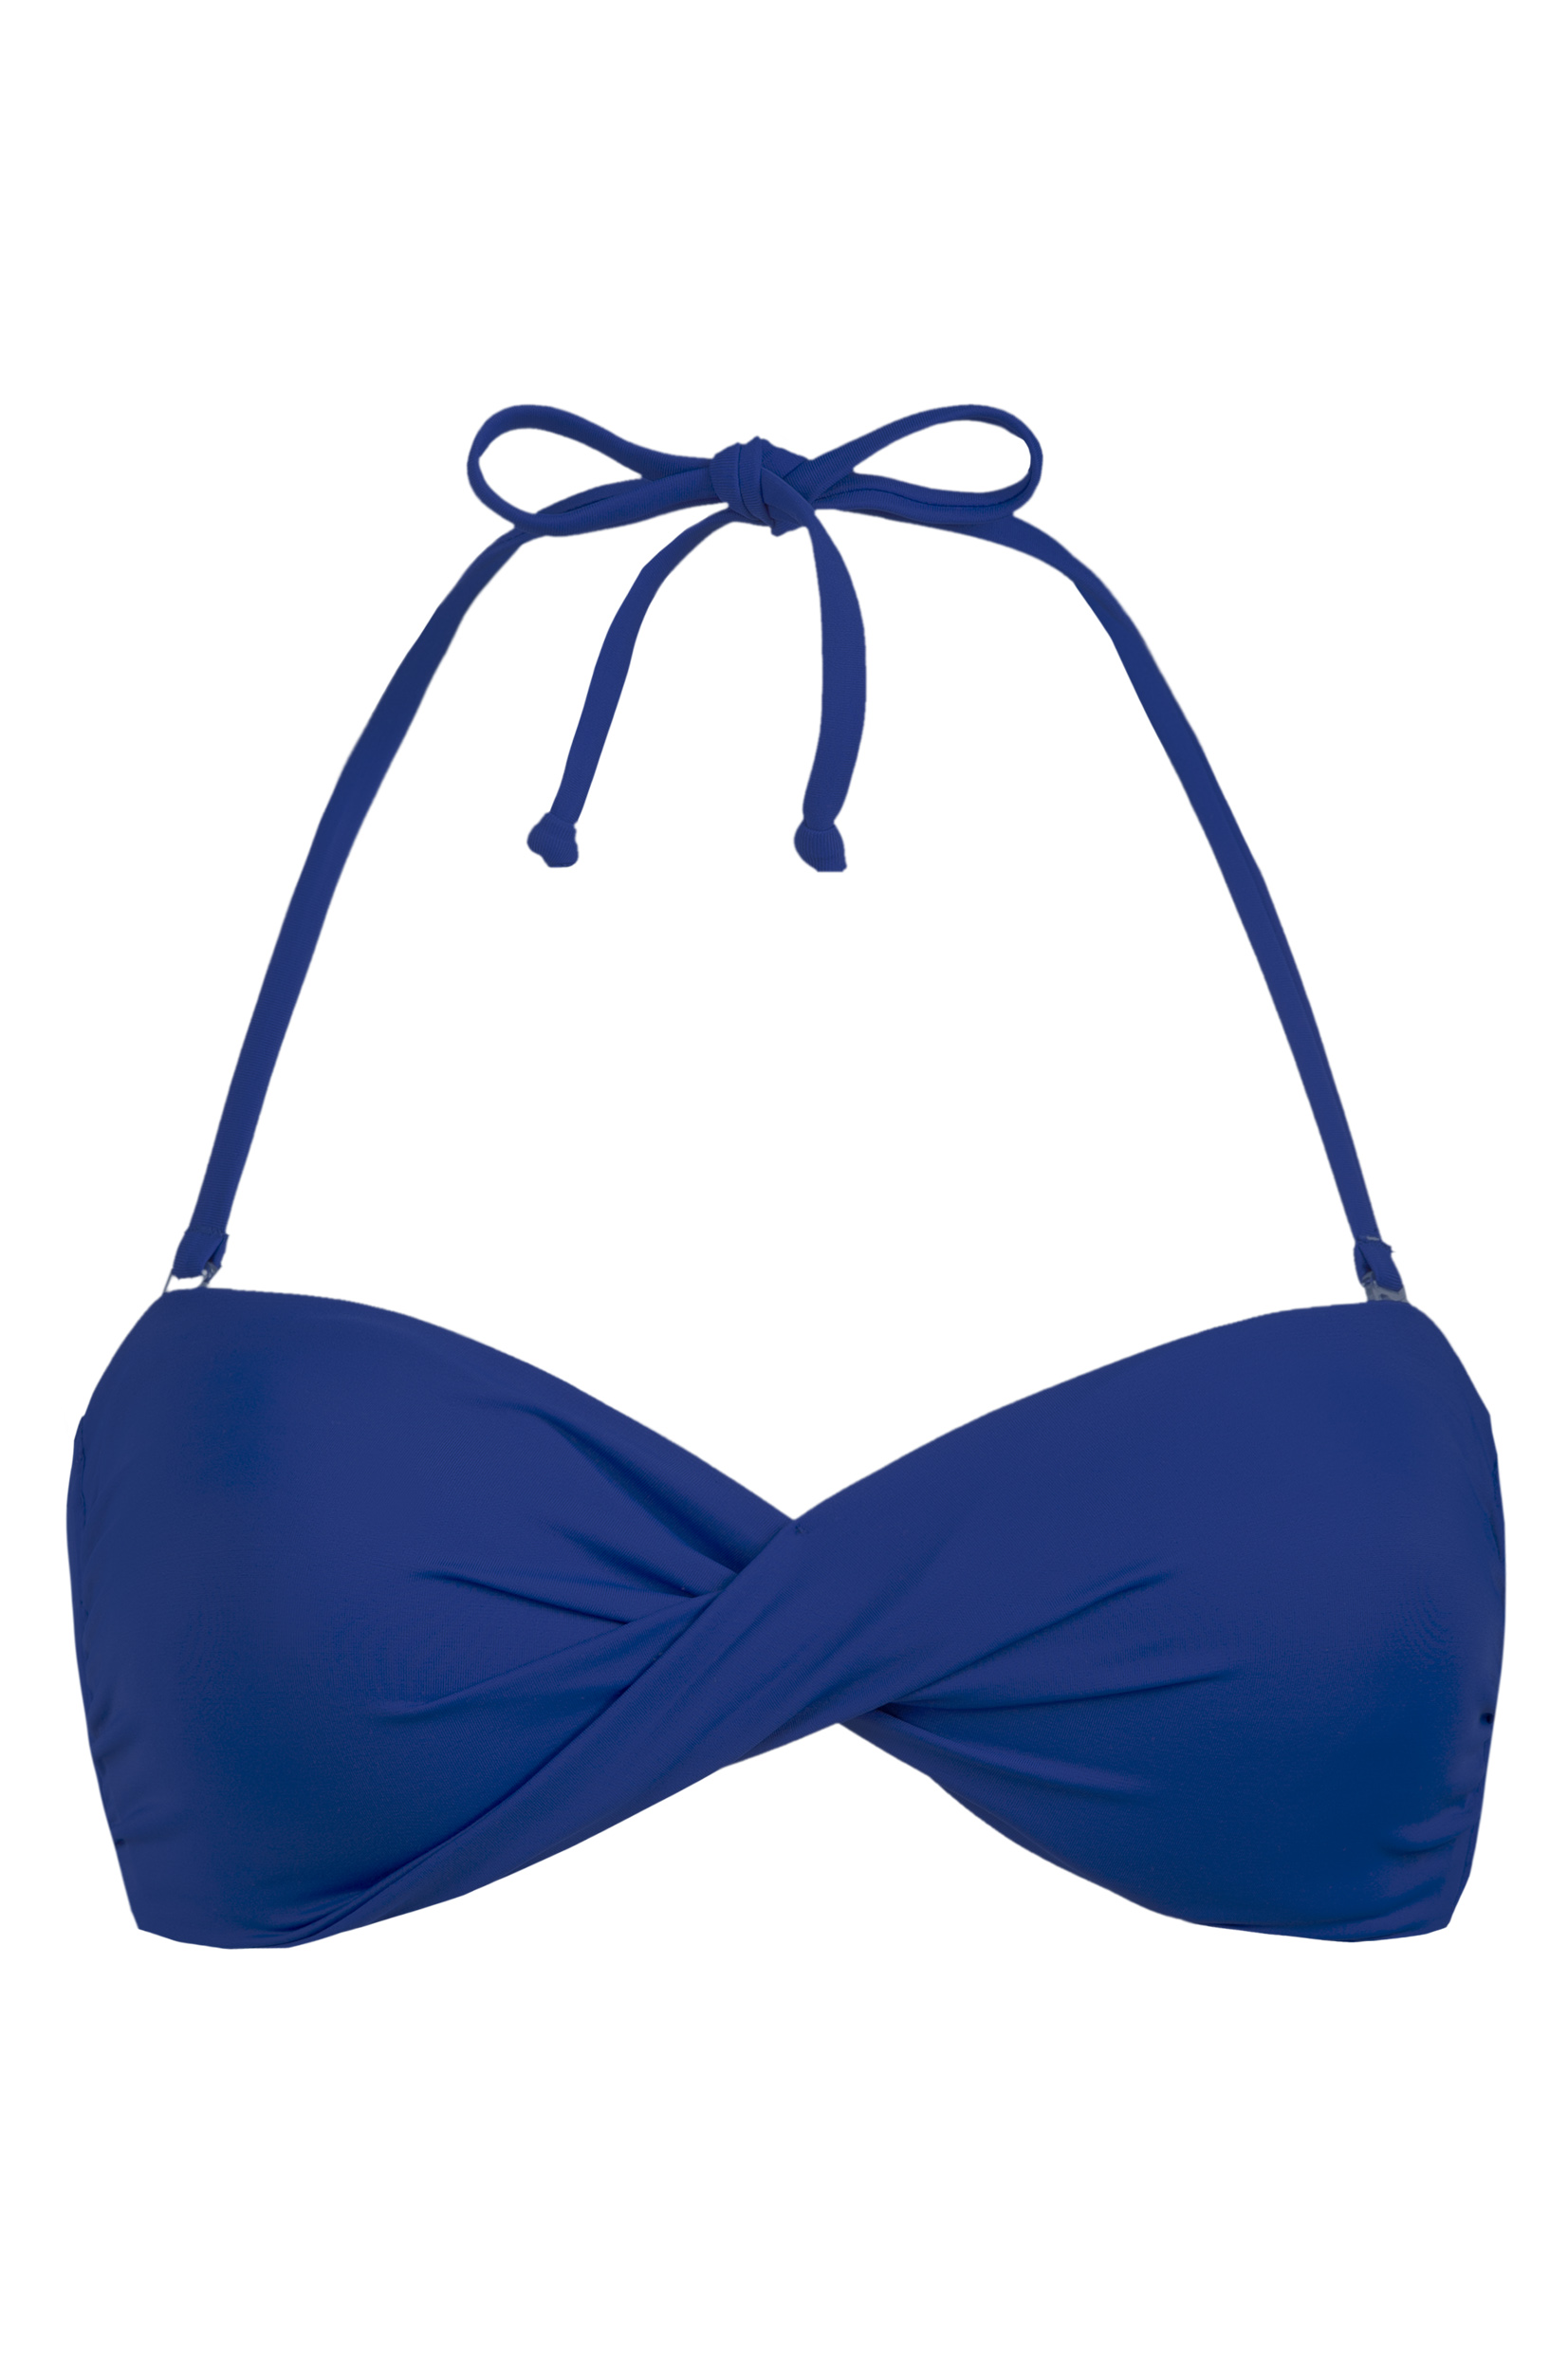 A Twister bikini a mindig stílusos tengerészkék színben kapható. Bár a szín klasszikus, a fazon igazán izgalmas és fiatalos.